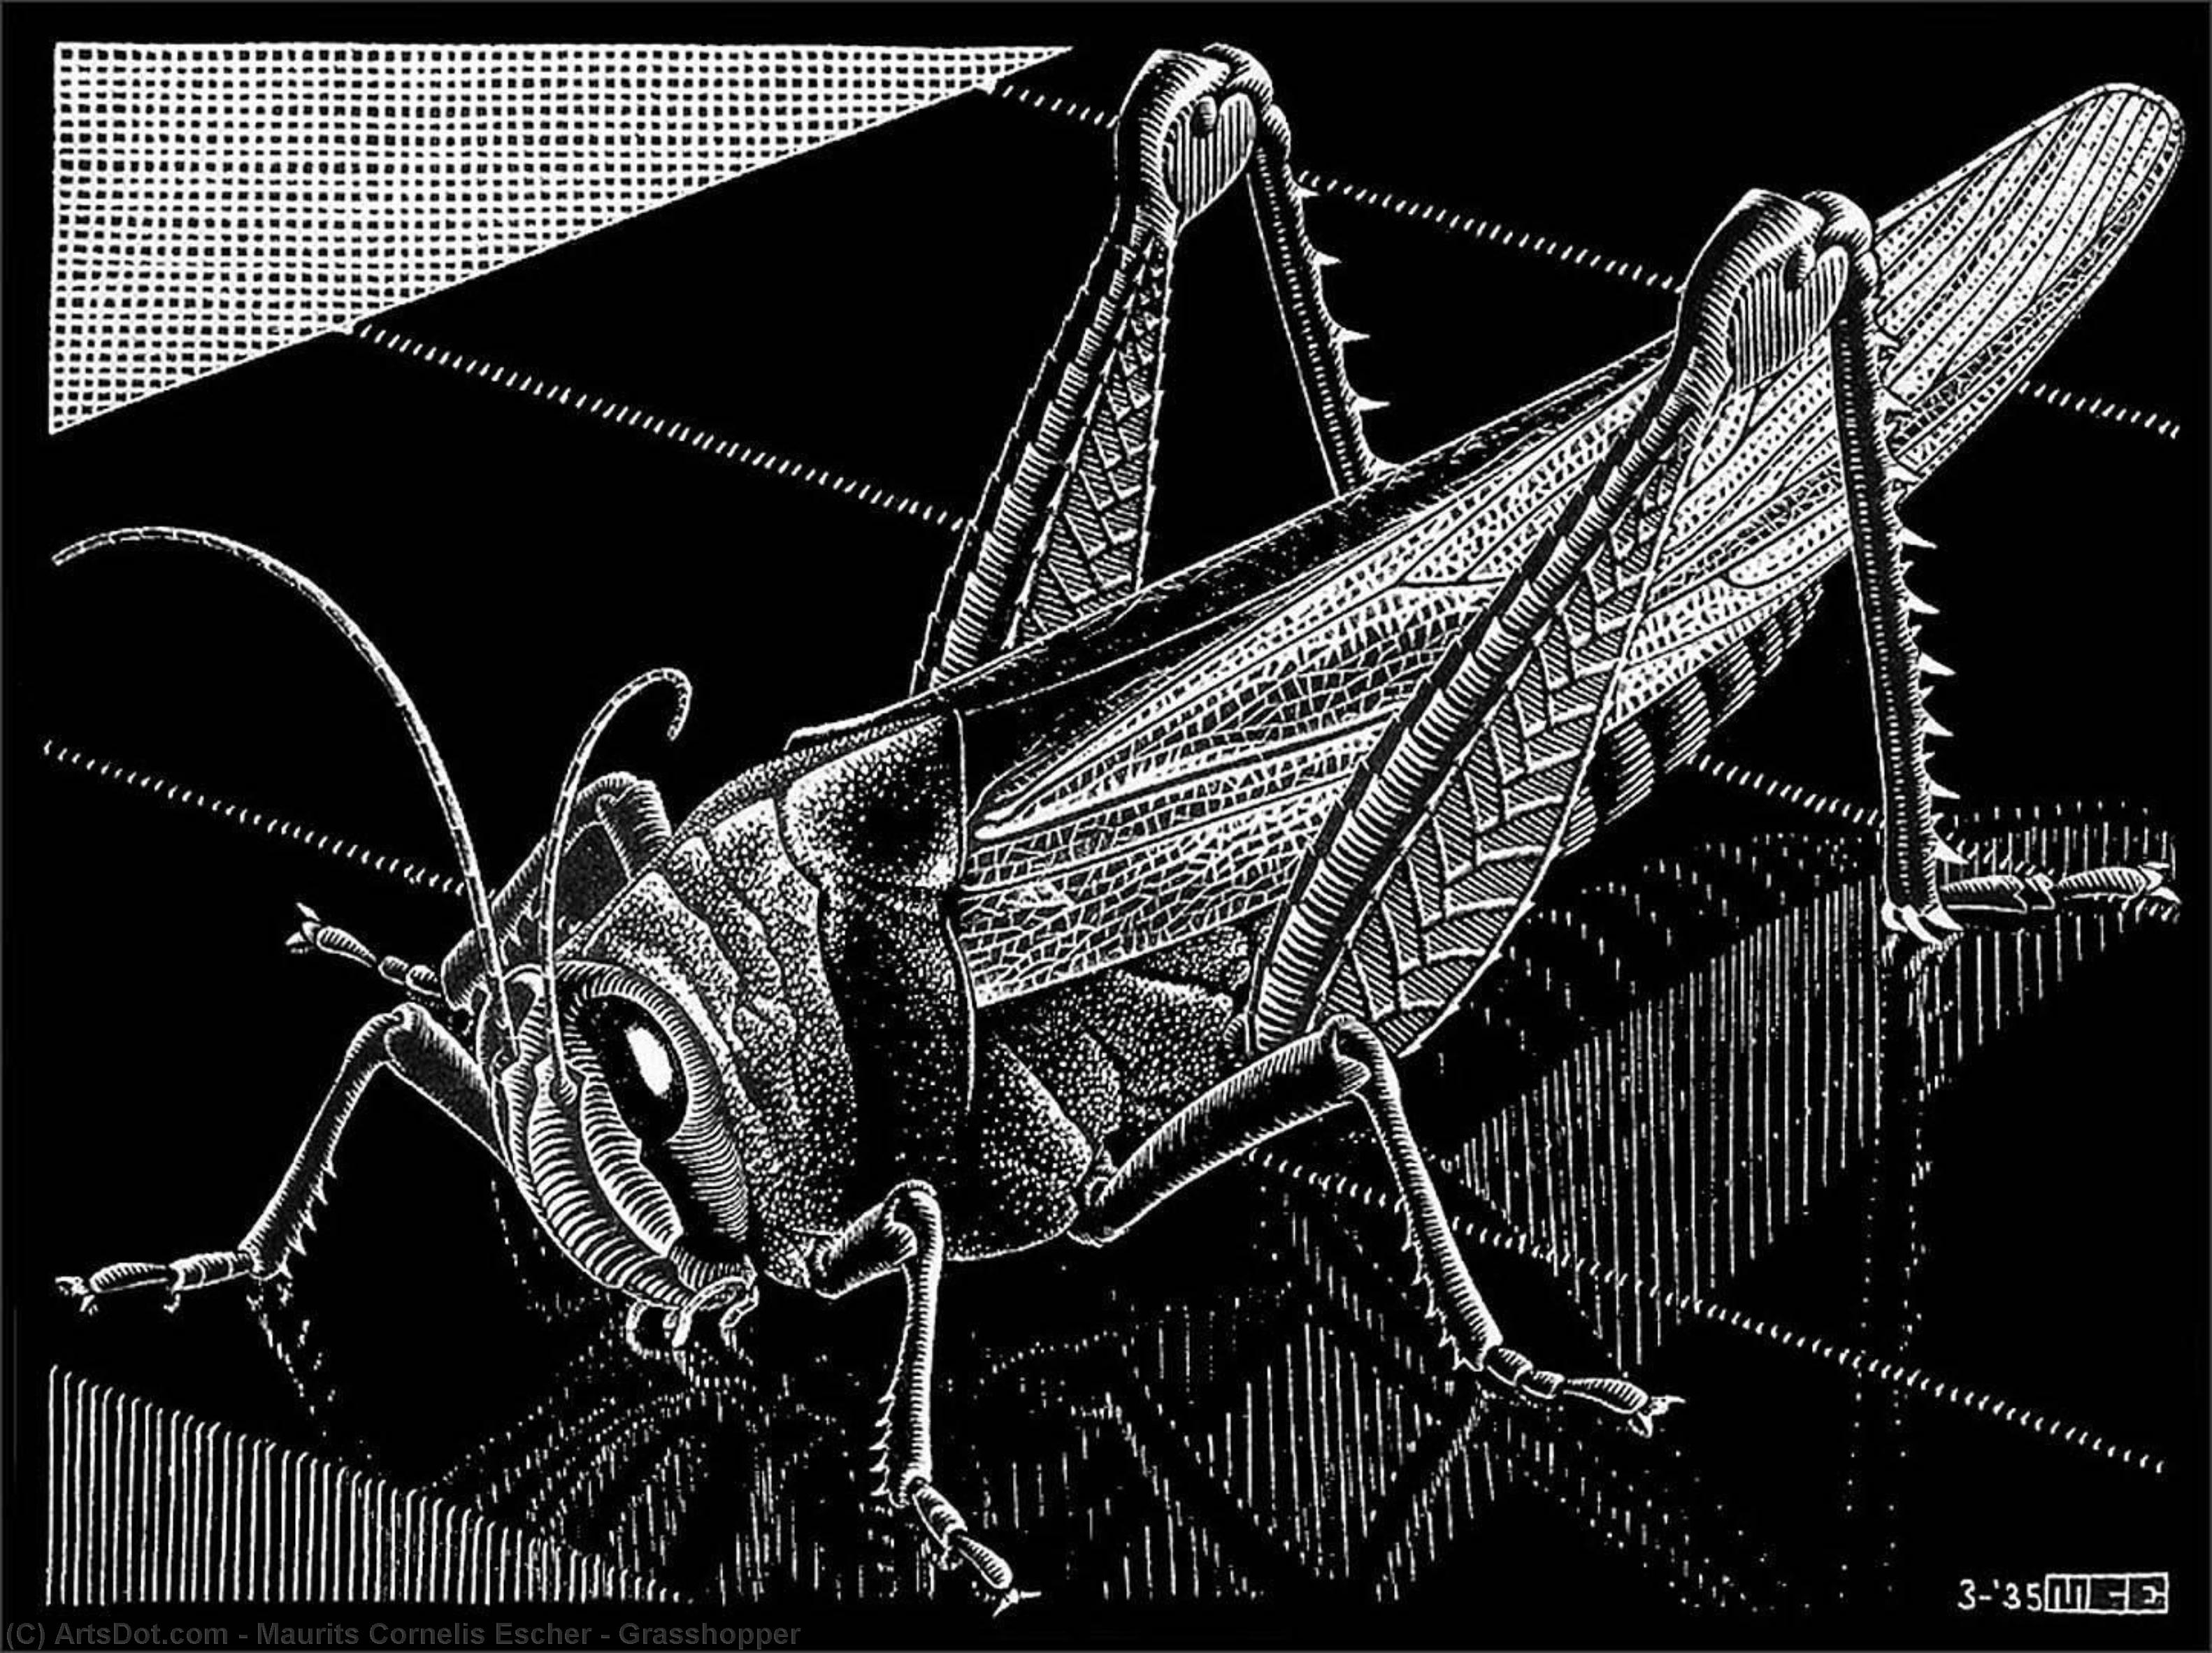 Wikioo.org - Bách khoa toàn thư về mỹ thuật - Vẽ tranh, Tác phẩm nghệ thuật Maurits Cornelis Escher - Grasshopper